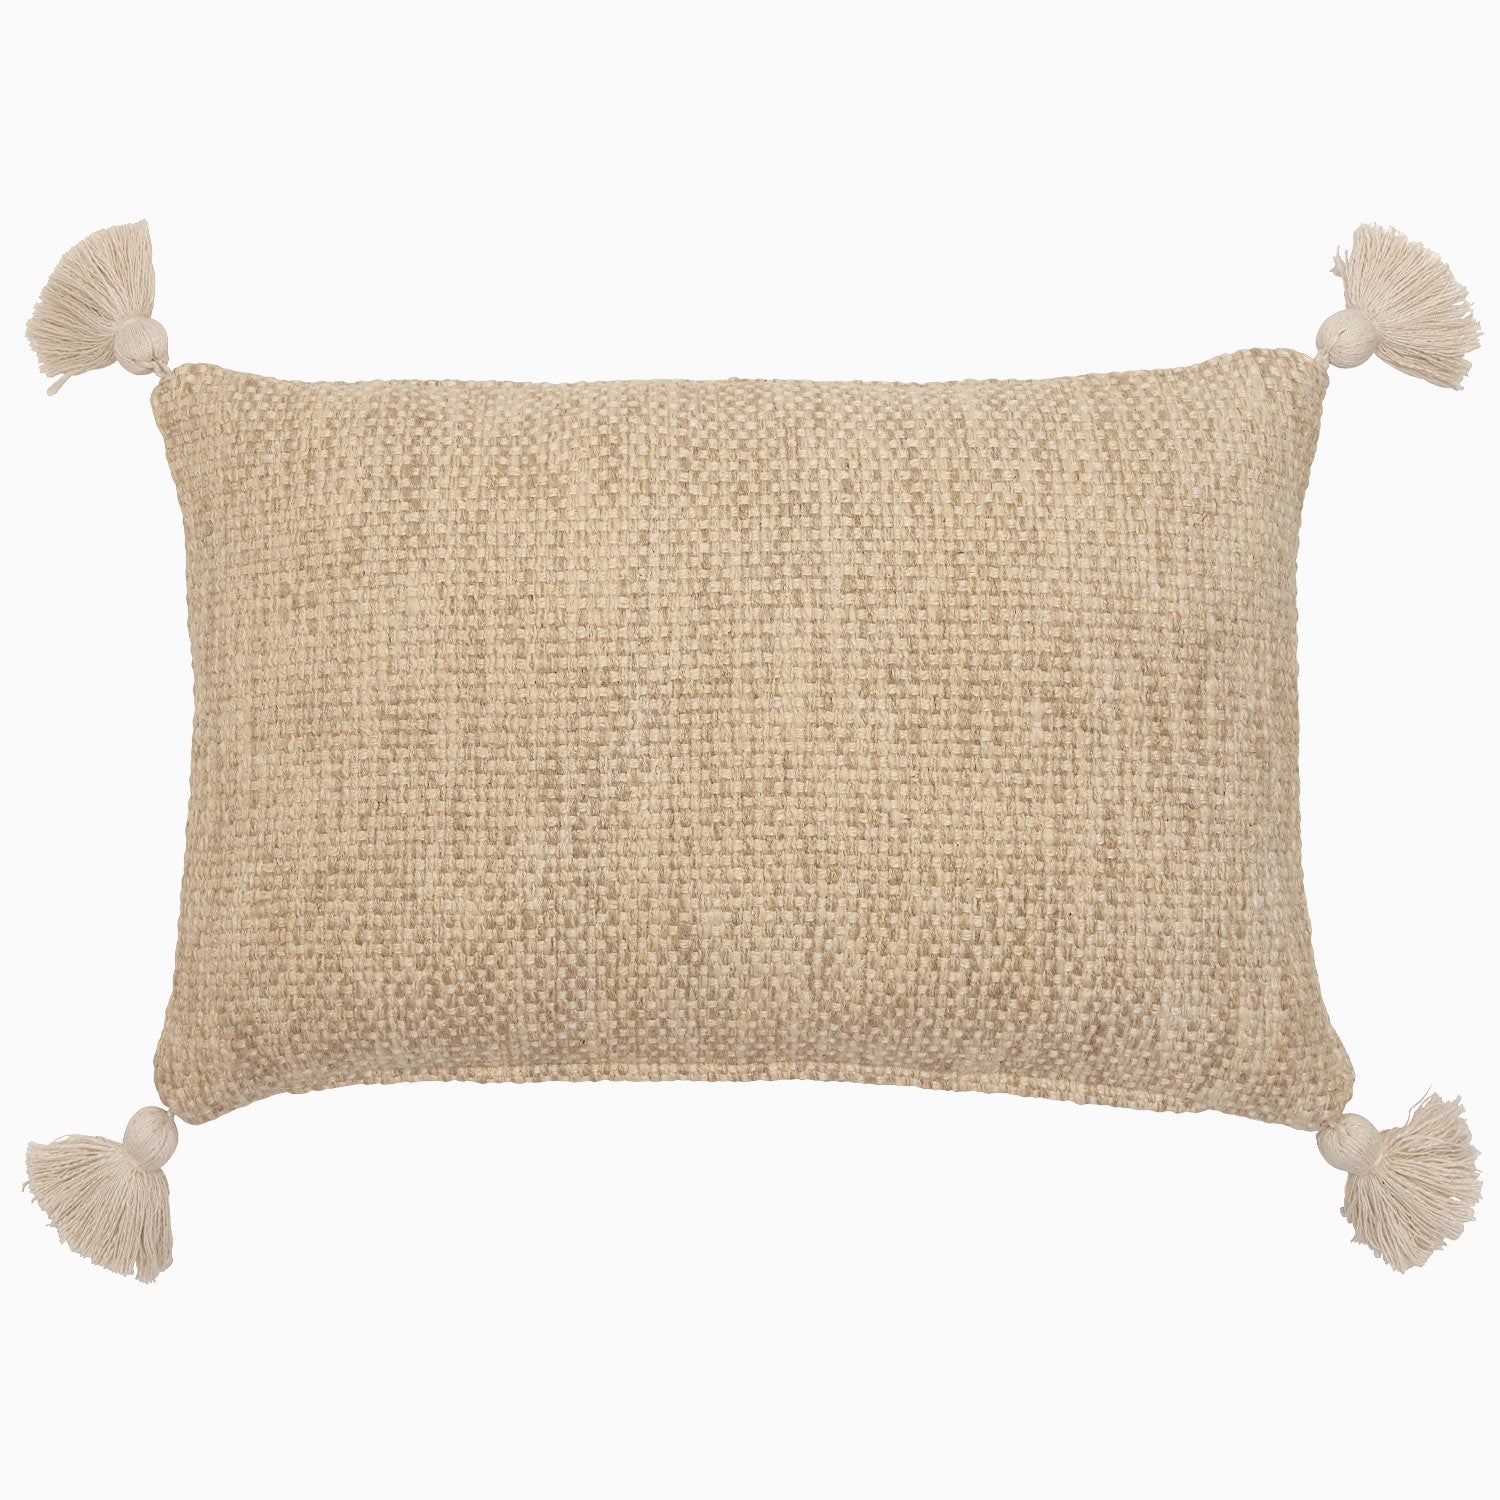 John Robshaw Woven Sand Kidney Pillow w/ Insert